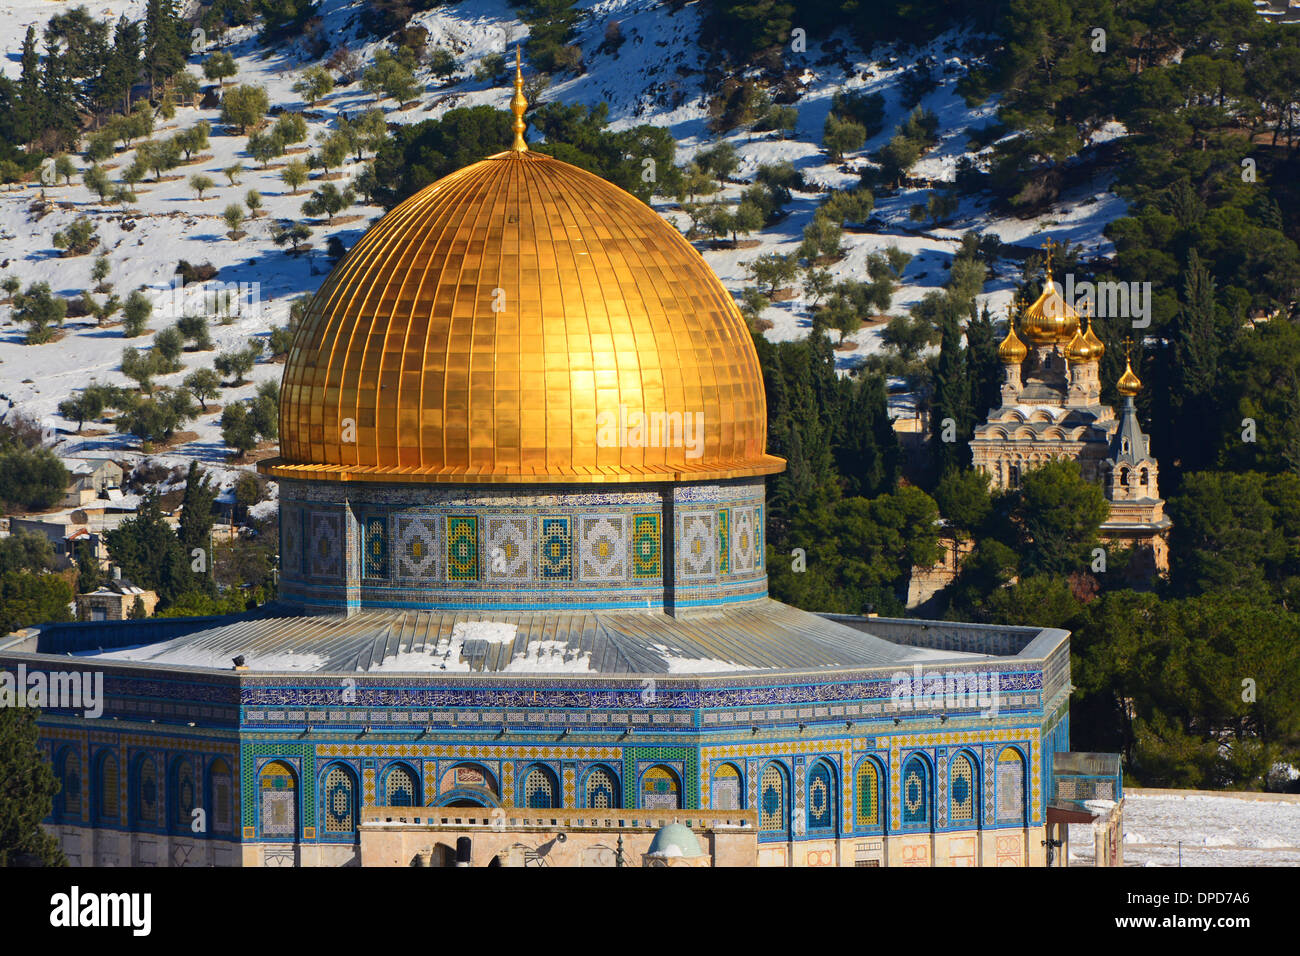 La mosquée Al Aqsa, Golden dome, Jérusalem, Israël Banque D'Images